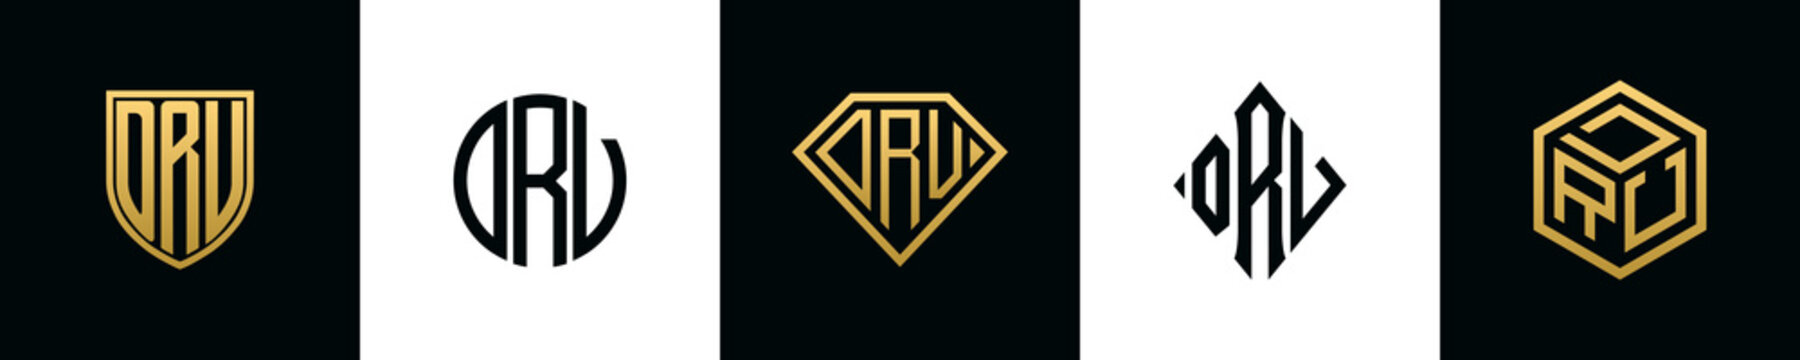 Initial letters DRV logo designs Bundle